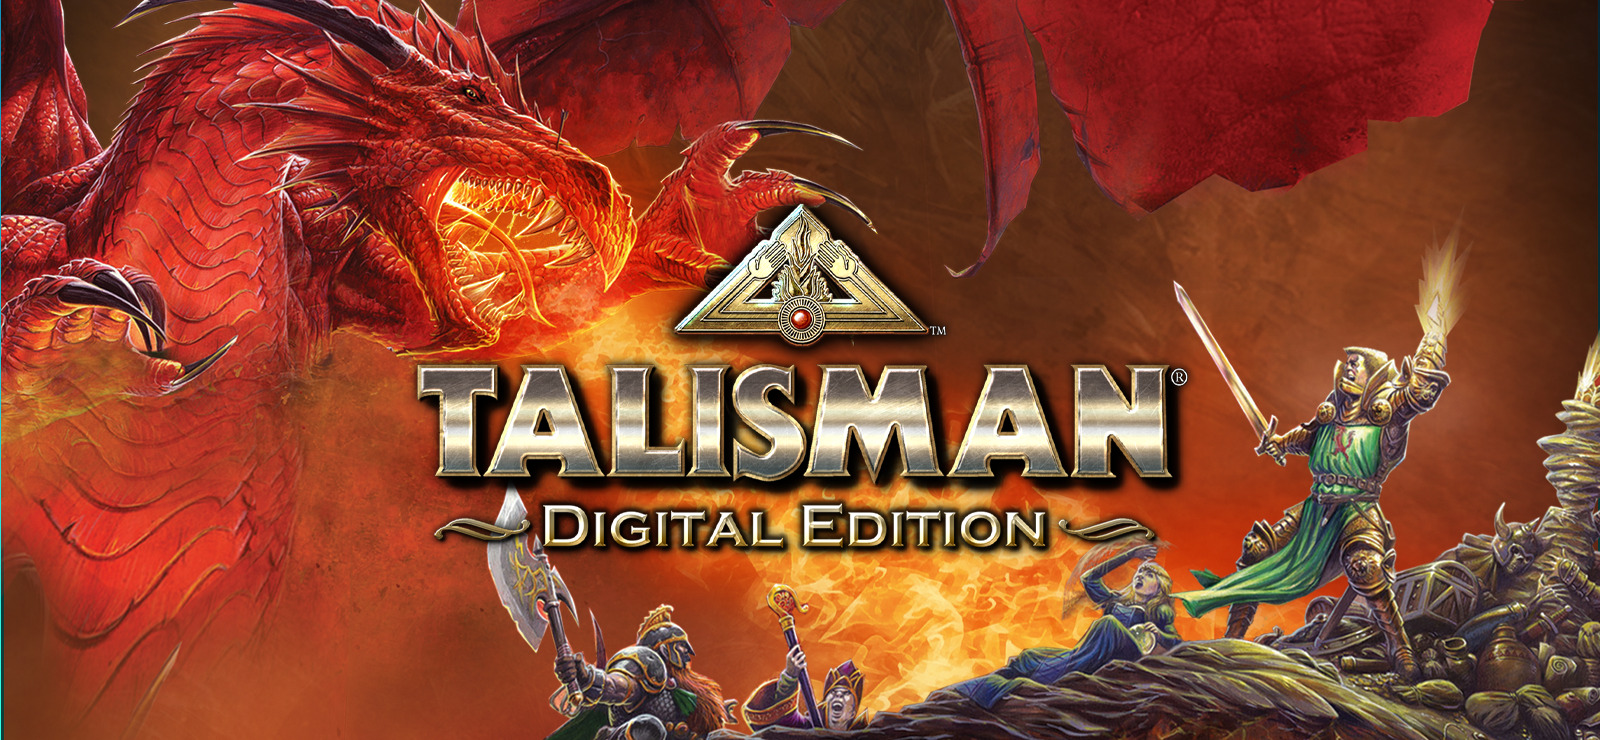 Talisman online release date